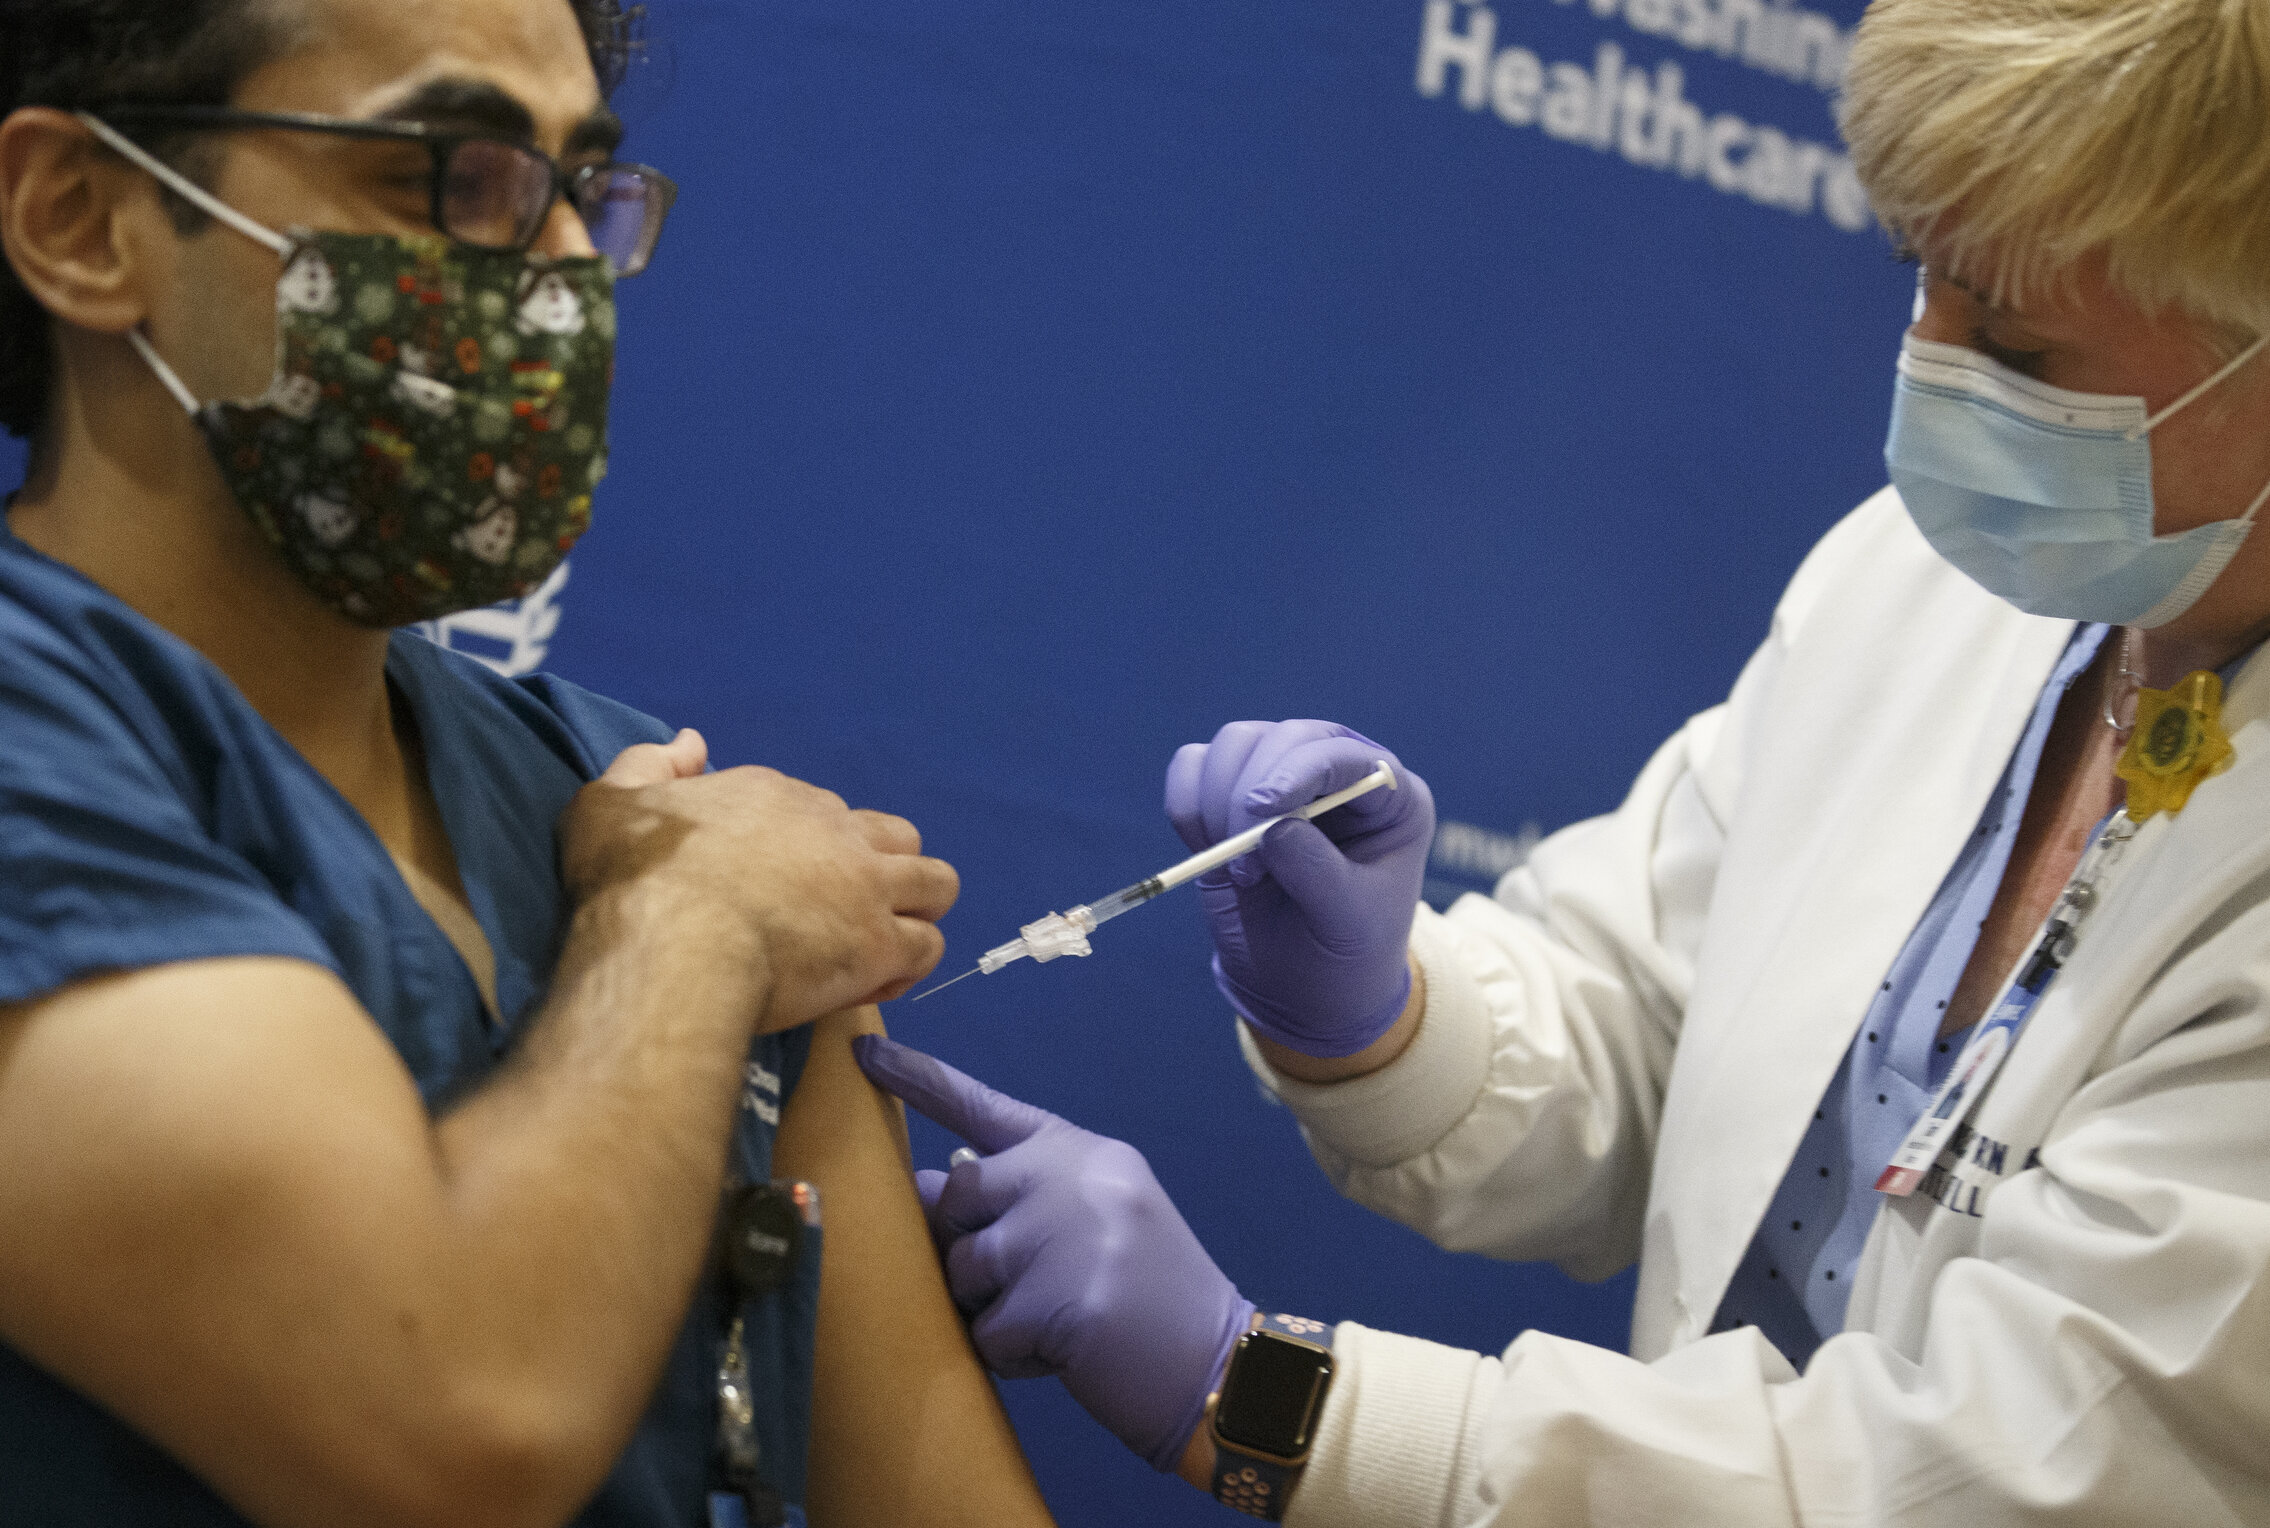 Un lucrător din domeniul medical dezvoltă o reacție alergică puternică în urma vaccinării anti-Covid